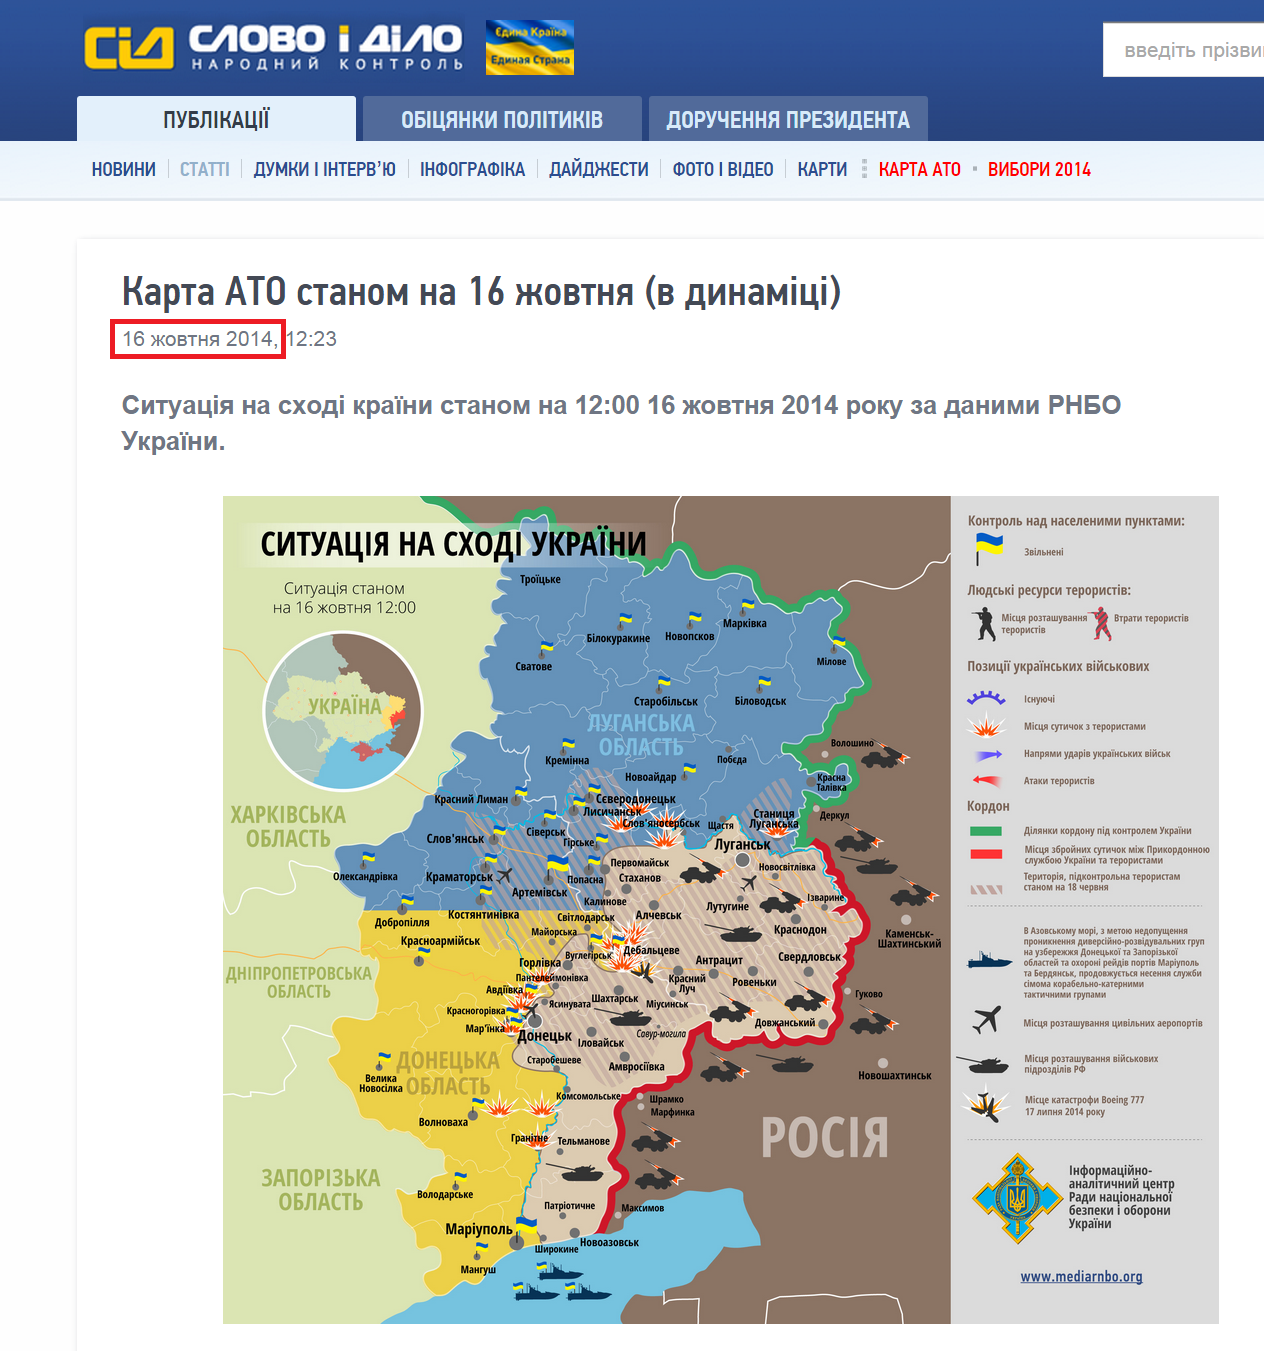 http://www.slovoidilo.ua/articles/5286/2014-10-16/karta-ato-po-sostoyaniyu-na-16-oktyabrya-v-dinamike.html